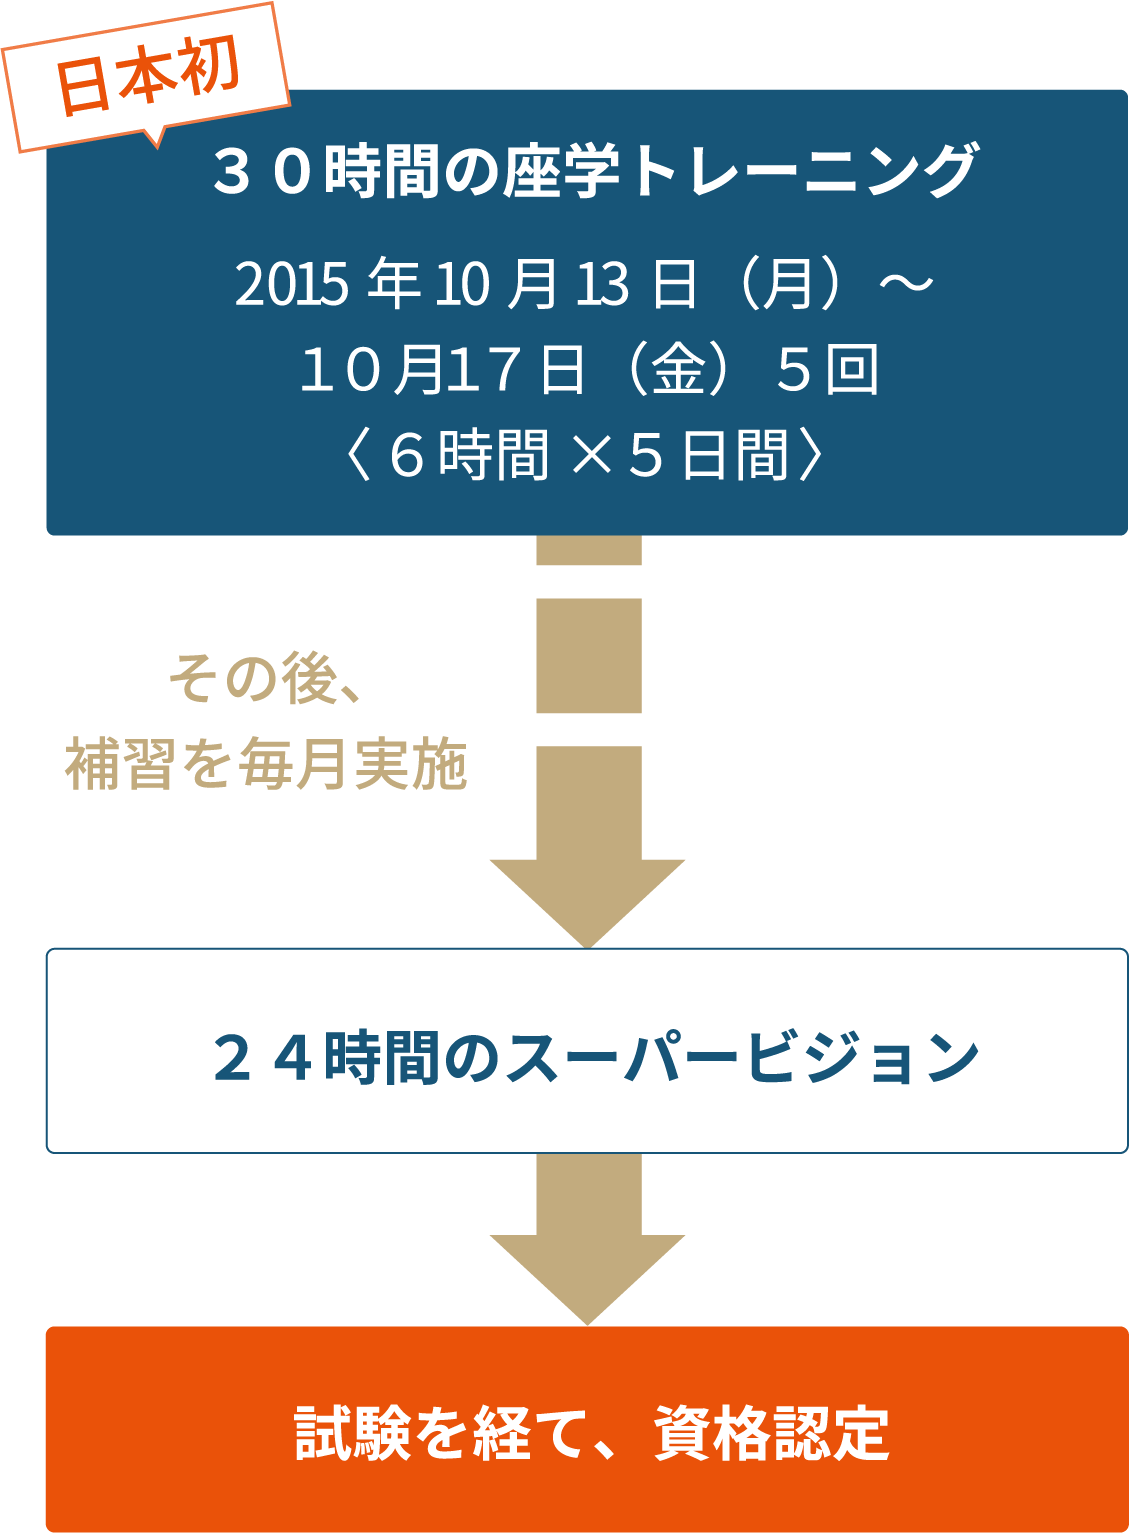 日本初ギャンブル依存症特化型カウンセラー 認定までのプロセス